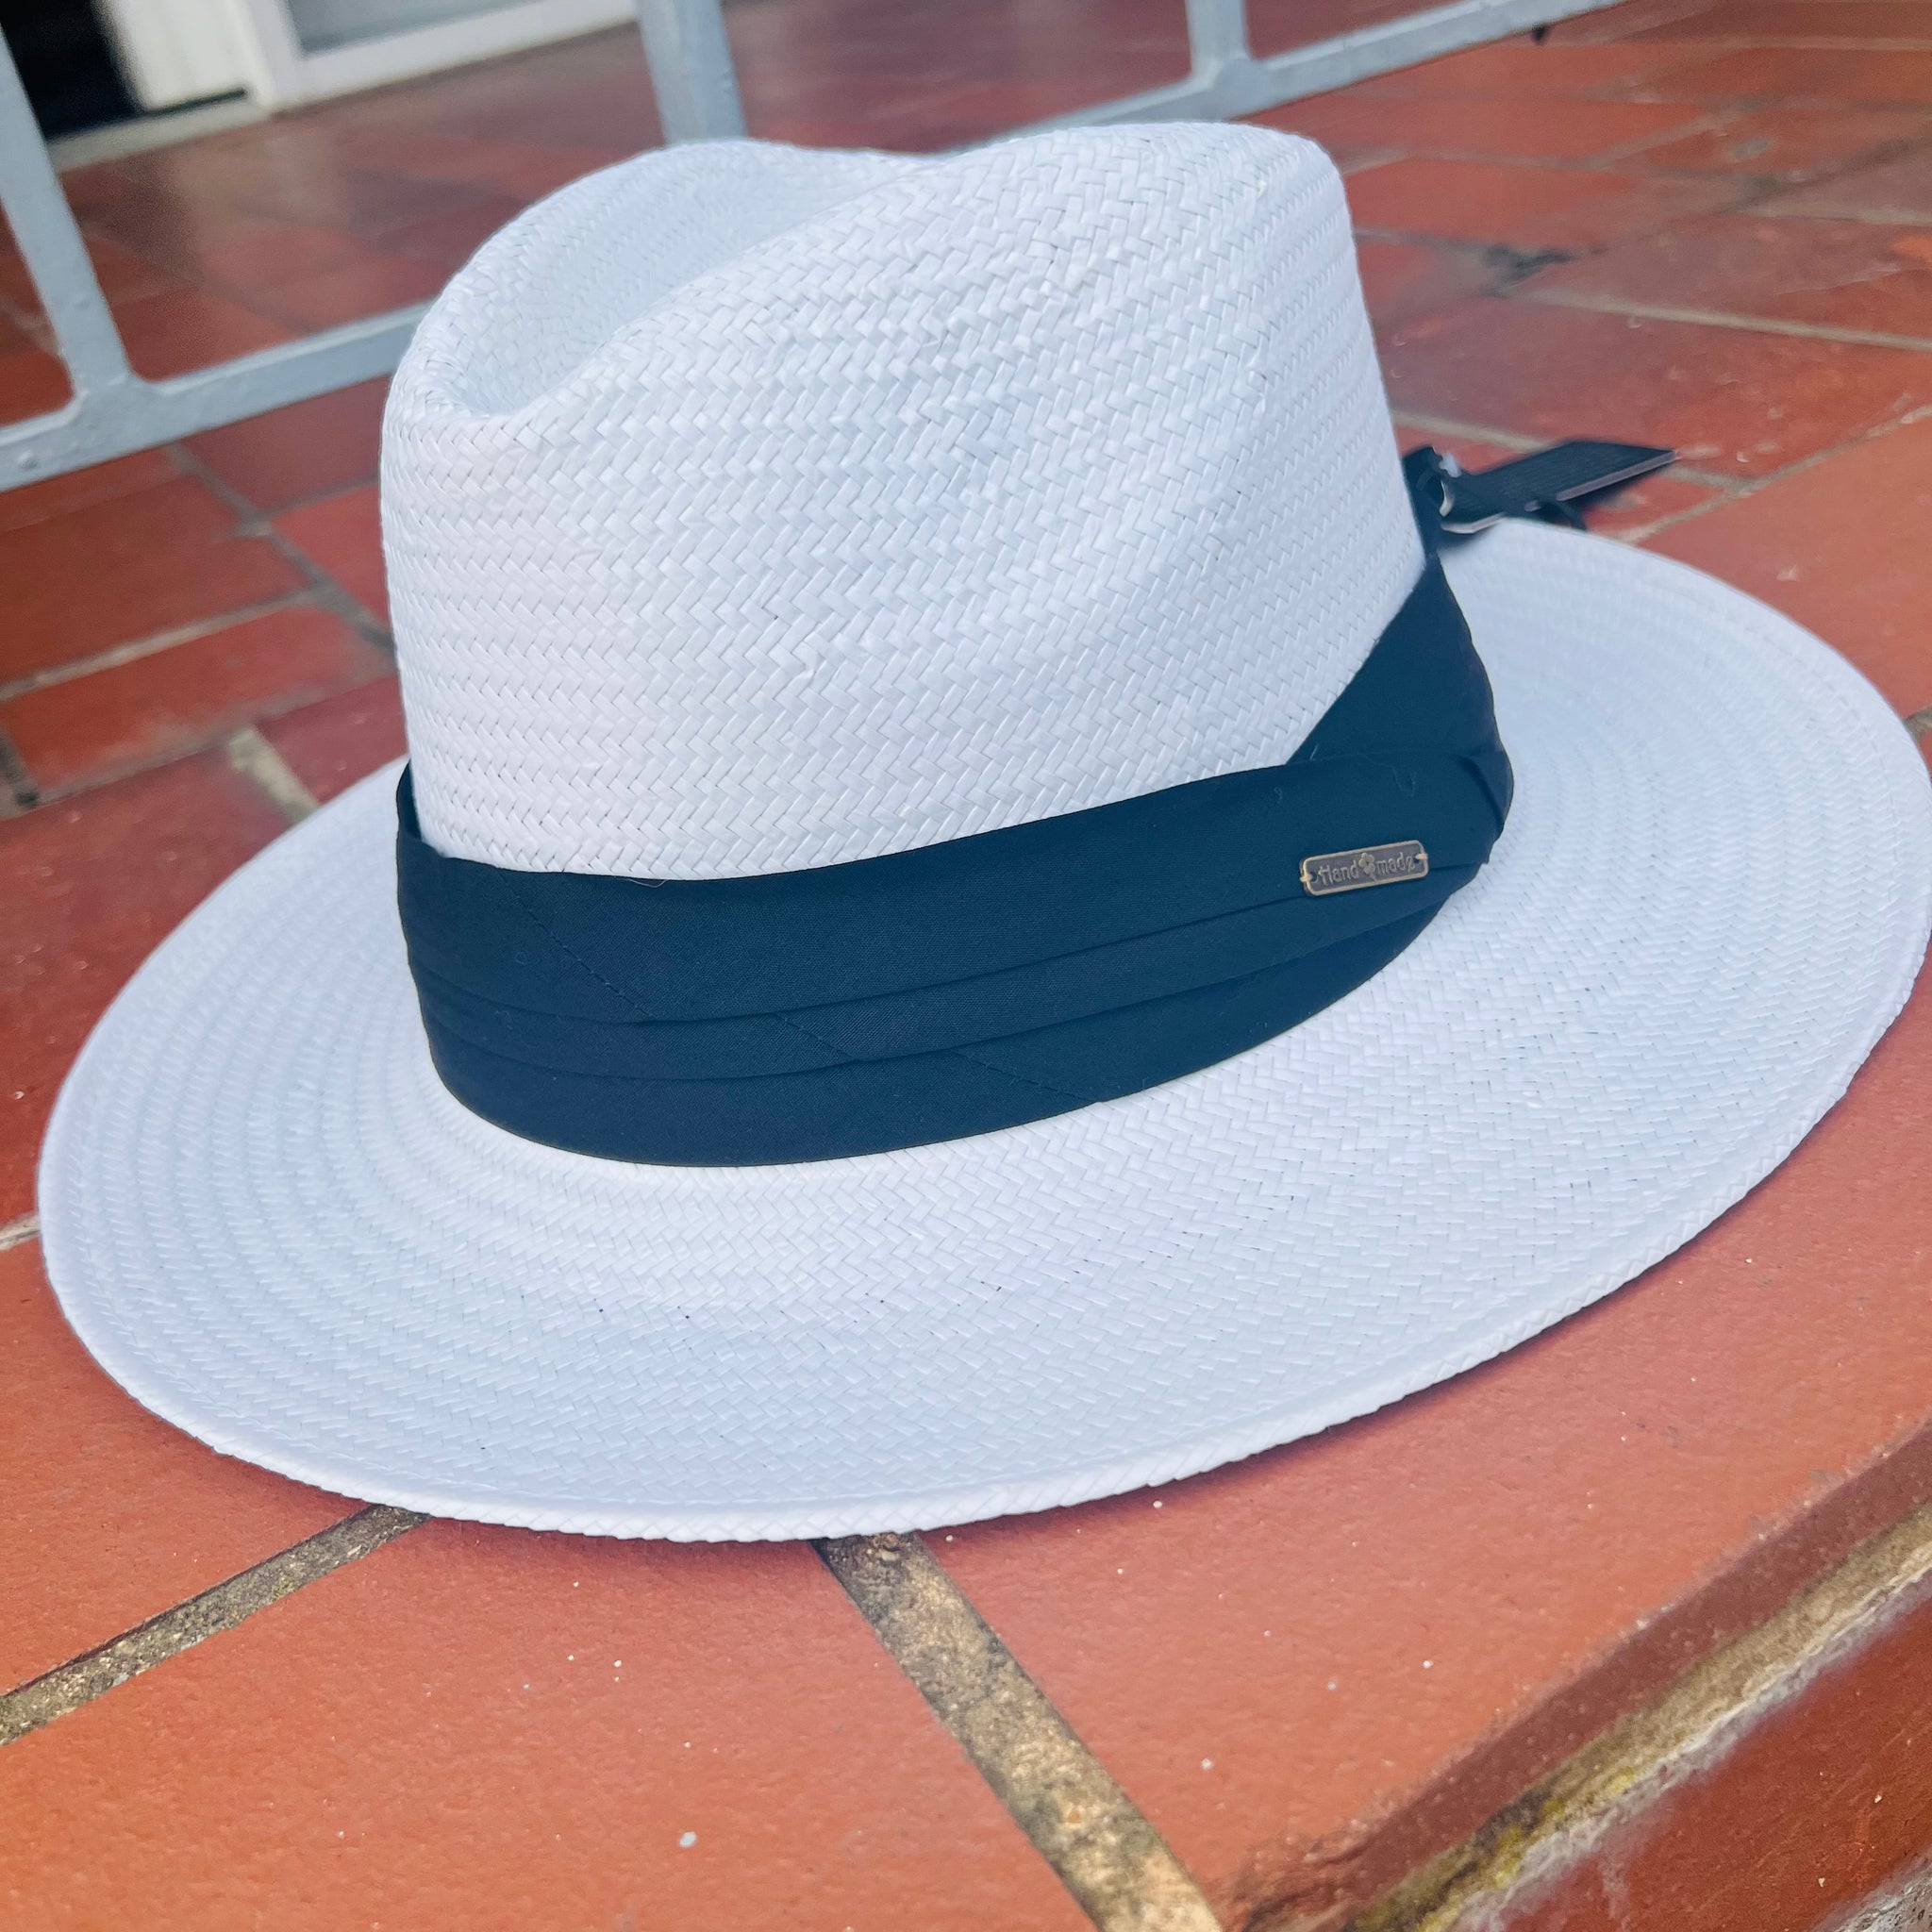 Adjustable Trilby Summer Hat